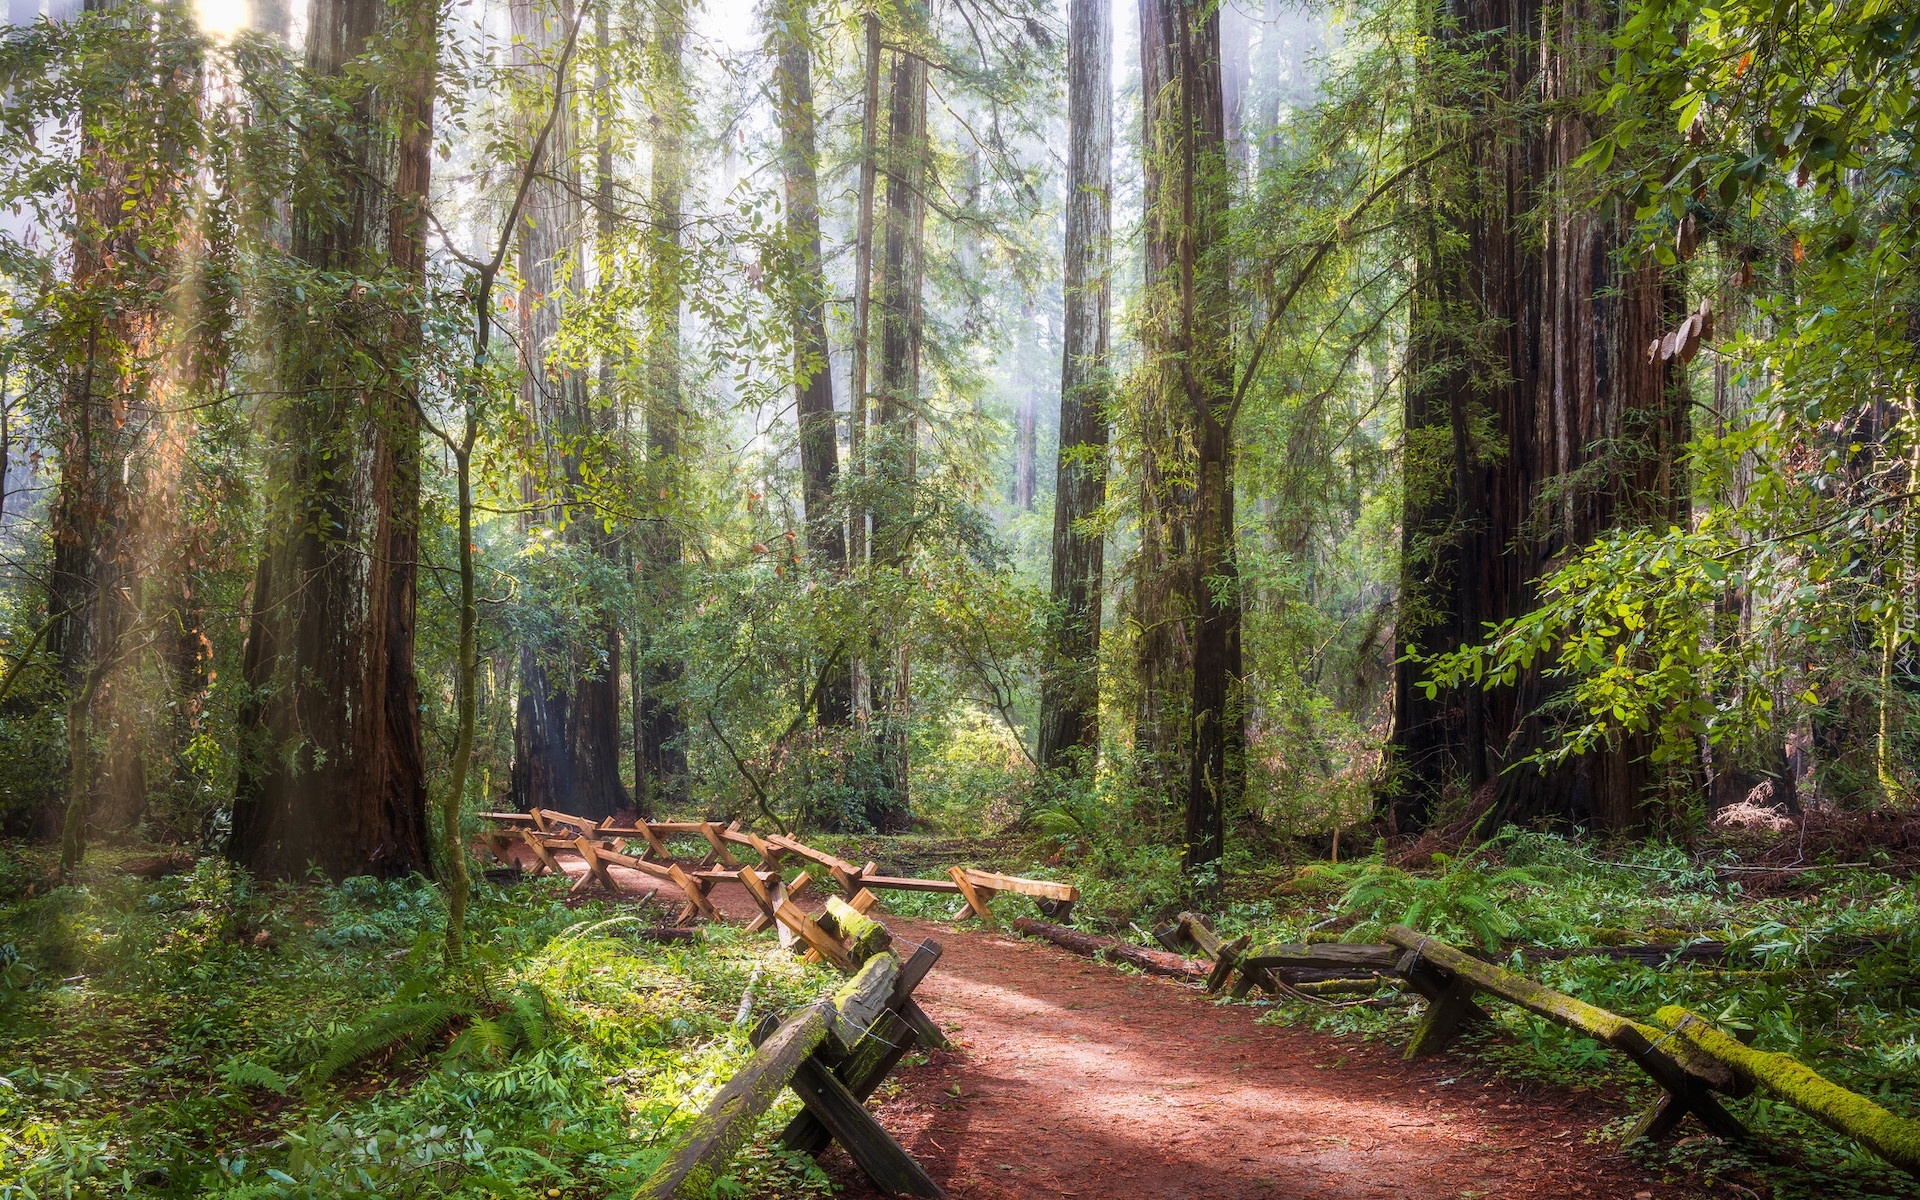 Las, Drzewa, Sekwoje, Ścieżka, Park Narodowy Redwood, Kalifornia, Stany Zjednoczone